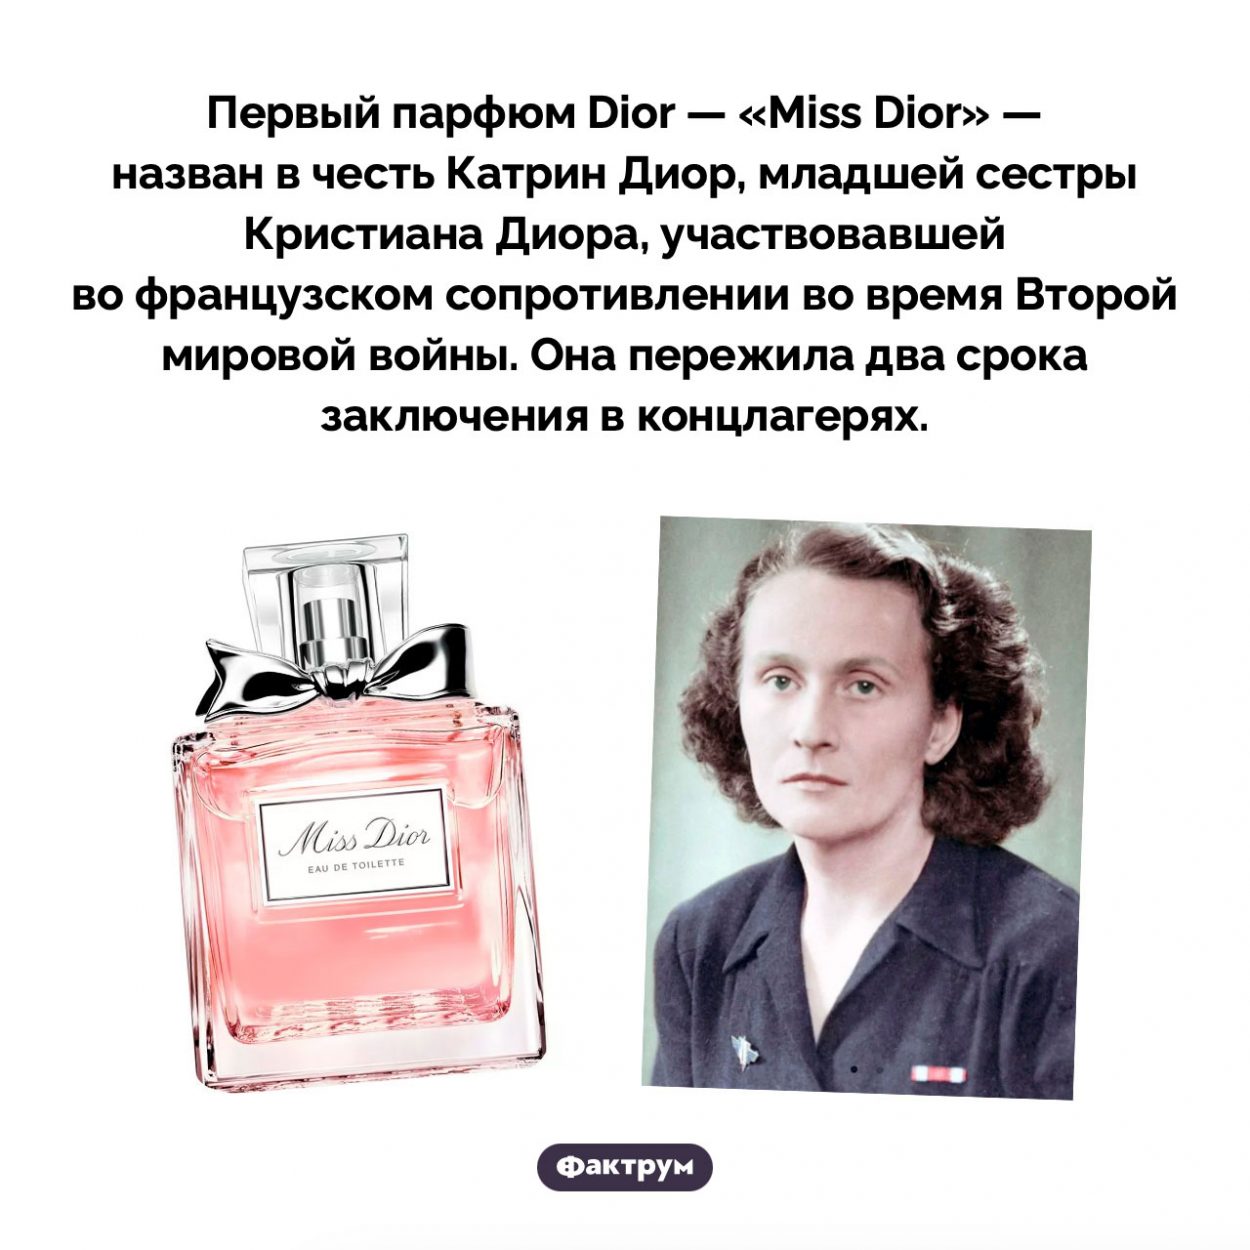 Почему аромат «Miss Dior» так называется. Первый парфюм Dior — «Miss Dior» — назван в честь Катрин Диор, младшей сестры Кристиана Диора, участвовавшей во французском сопротивлении во время Второй мировой войны. Она пережила два срока заключения в концлагерях.